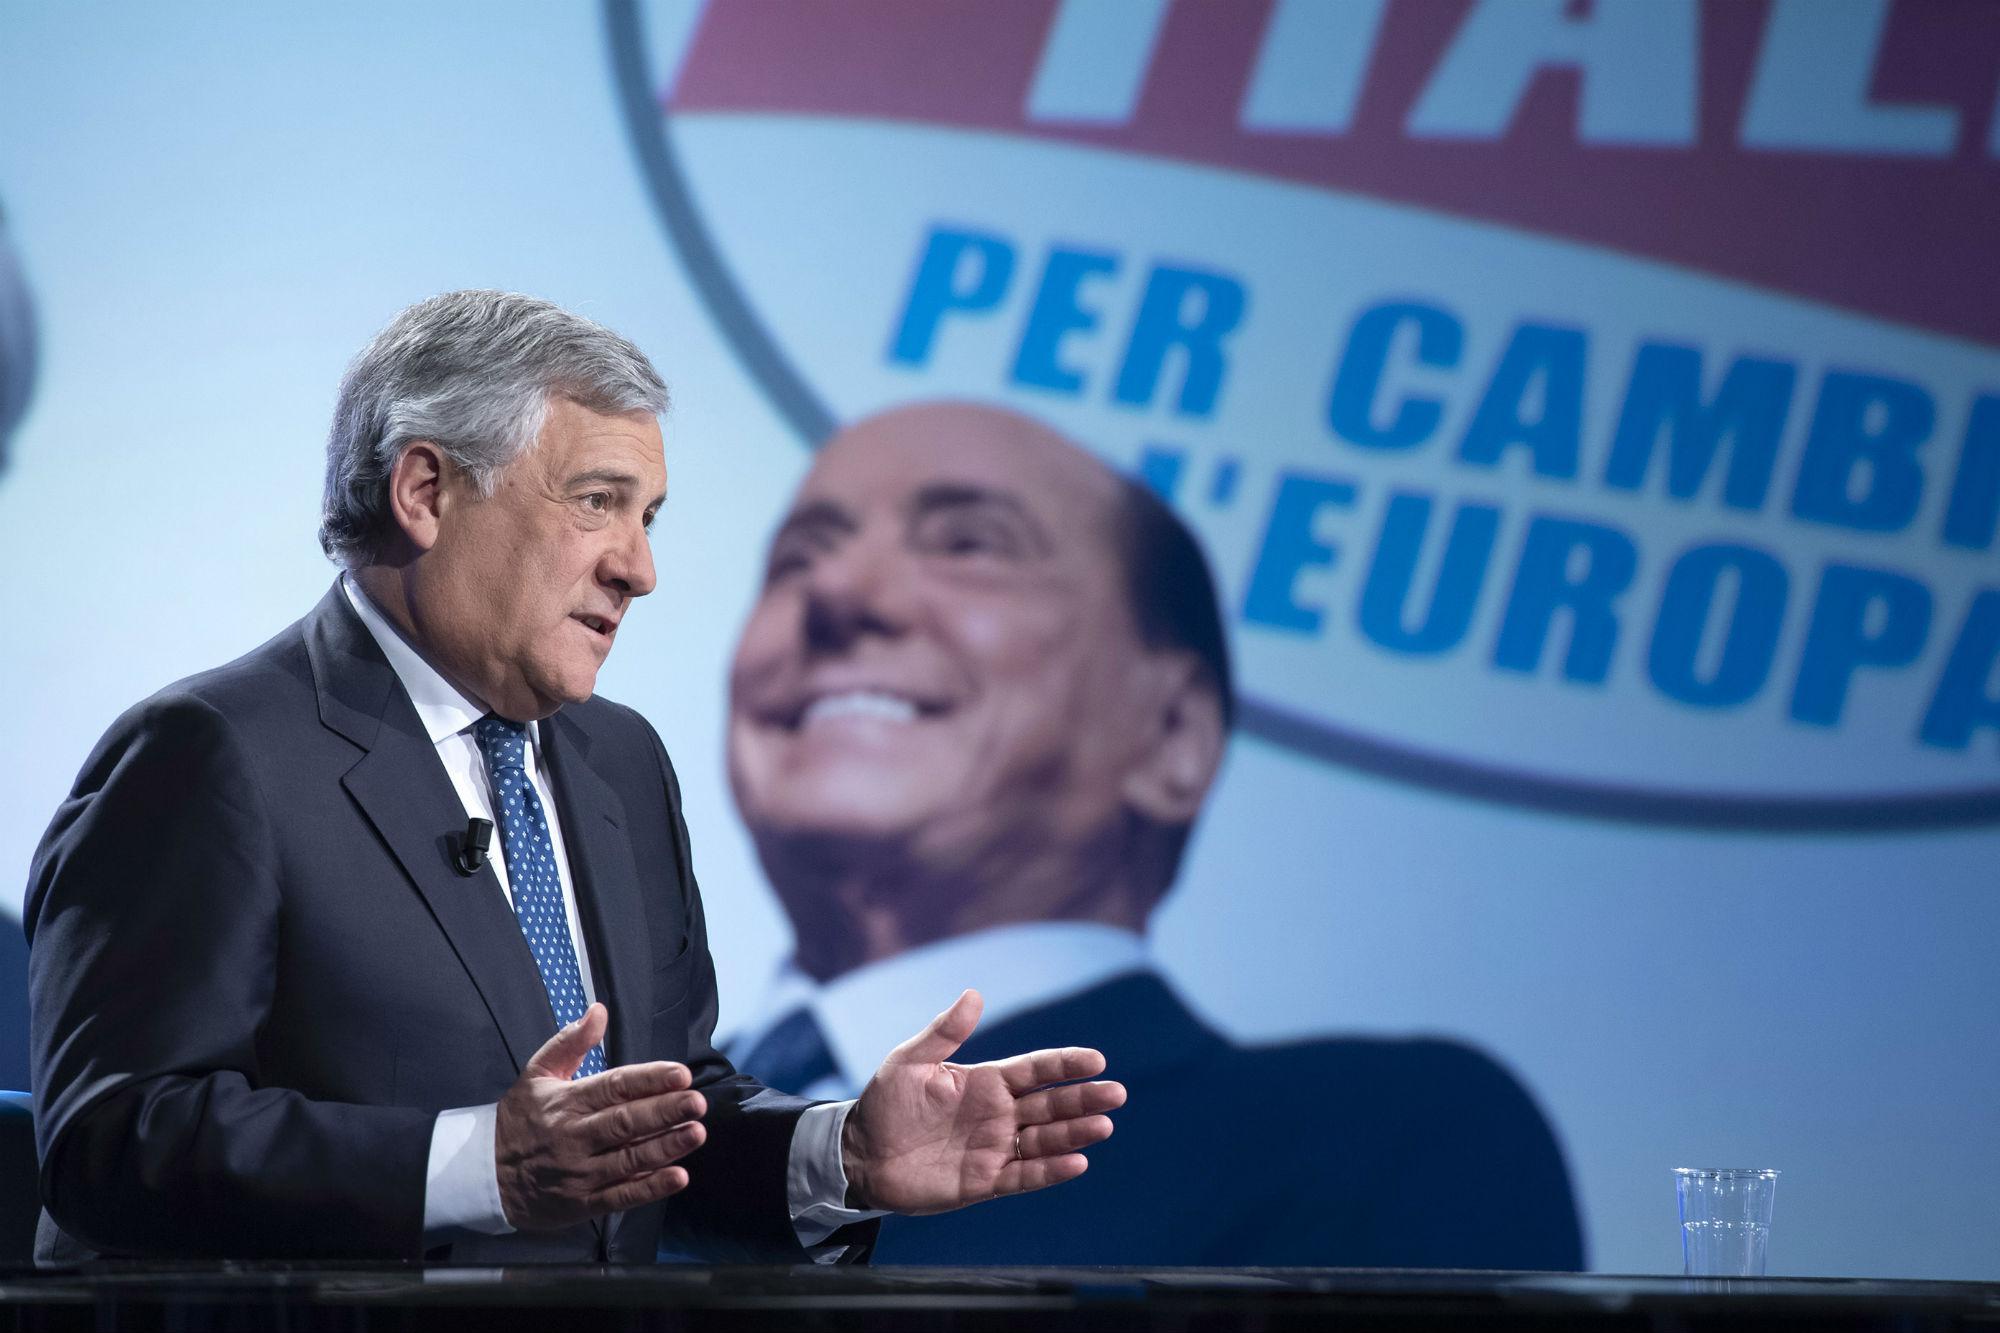 Tajani berlusconiano fino in fondo: "Farò quello che lui deciderà, e lui può fare qualsiasi cosa"